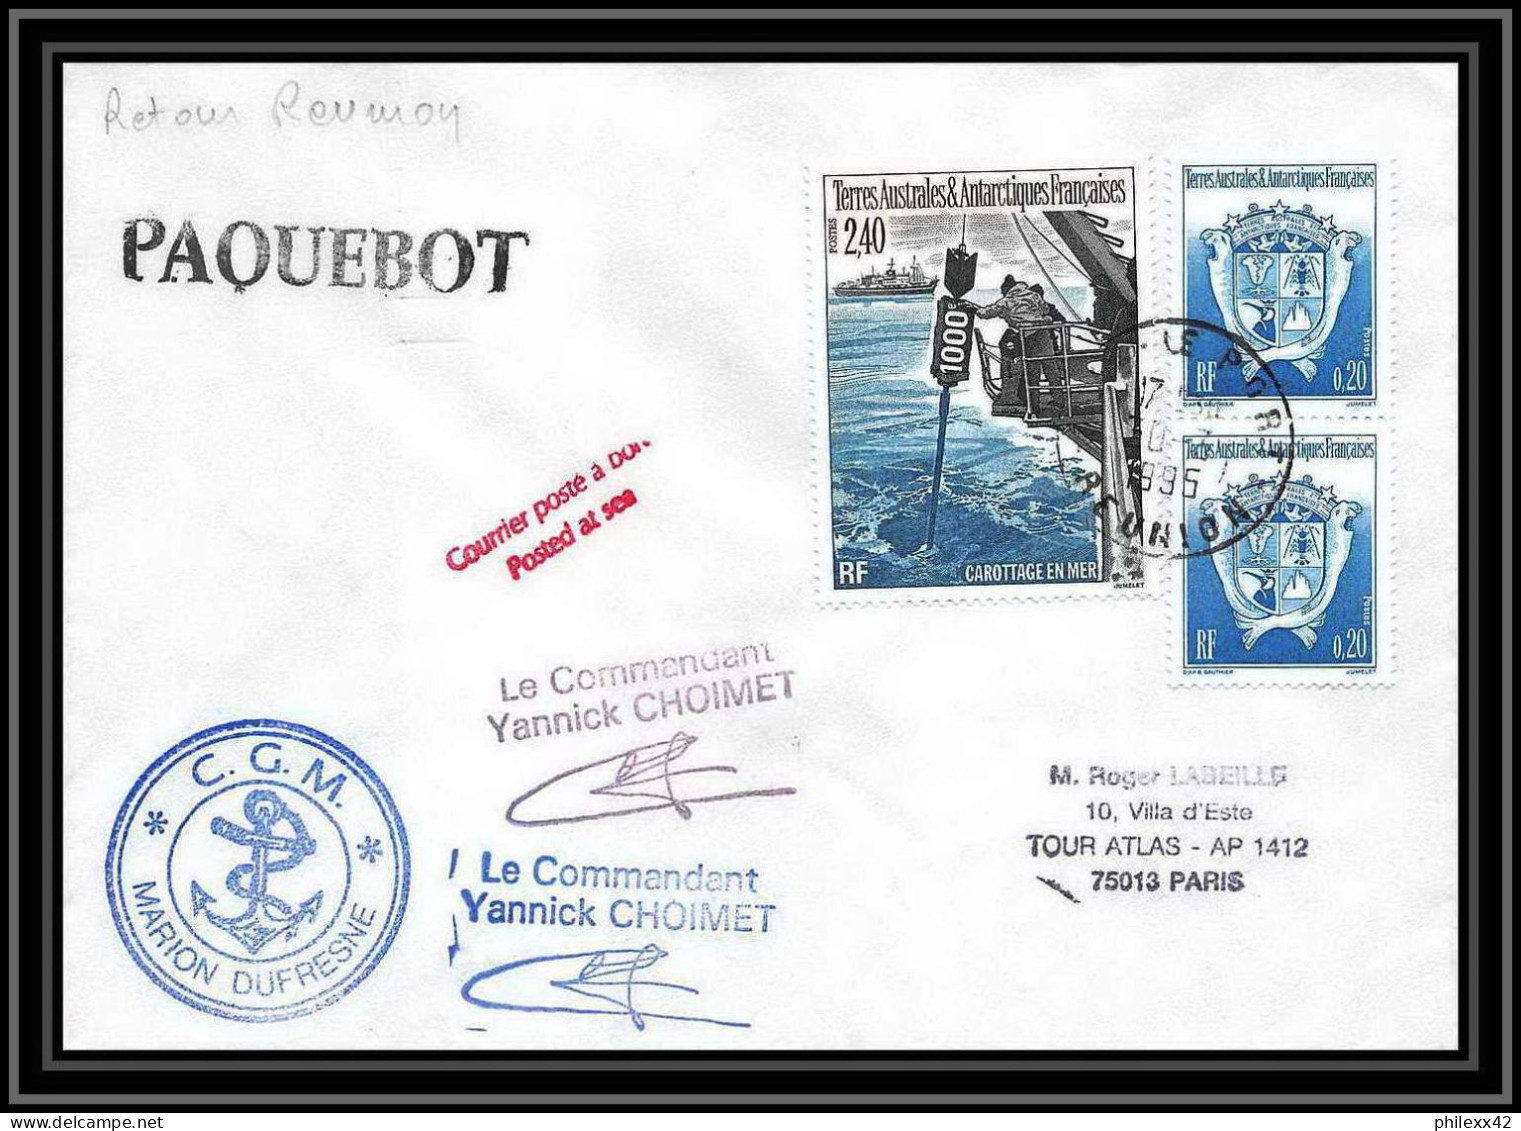 2346 ANTARCTIC Terres Australes TAAF Lettre Cover Dufresne 2 Retour Réunion 30/7/1995 Paquebot Signé Signed Choimet - Expediciones Antárticas